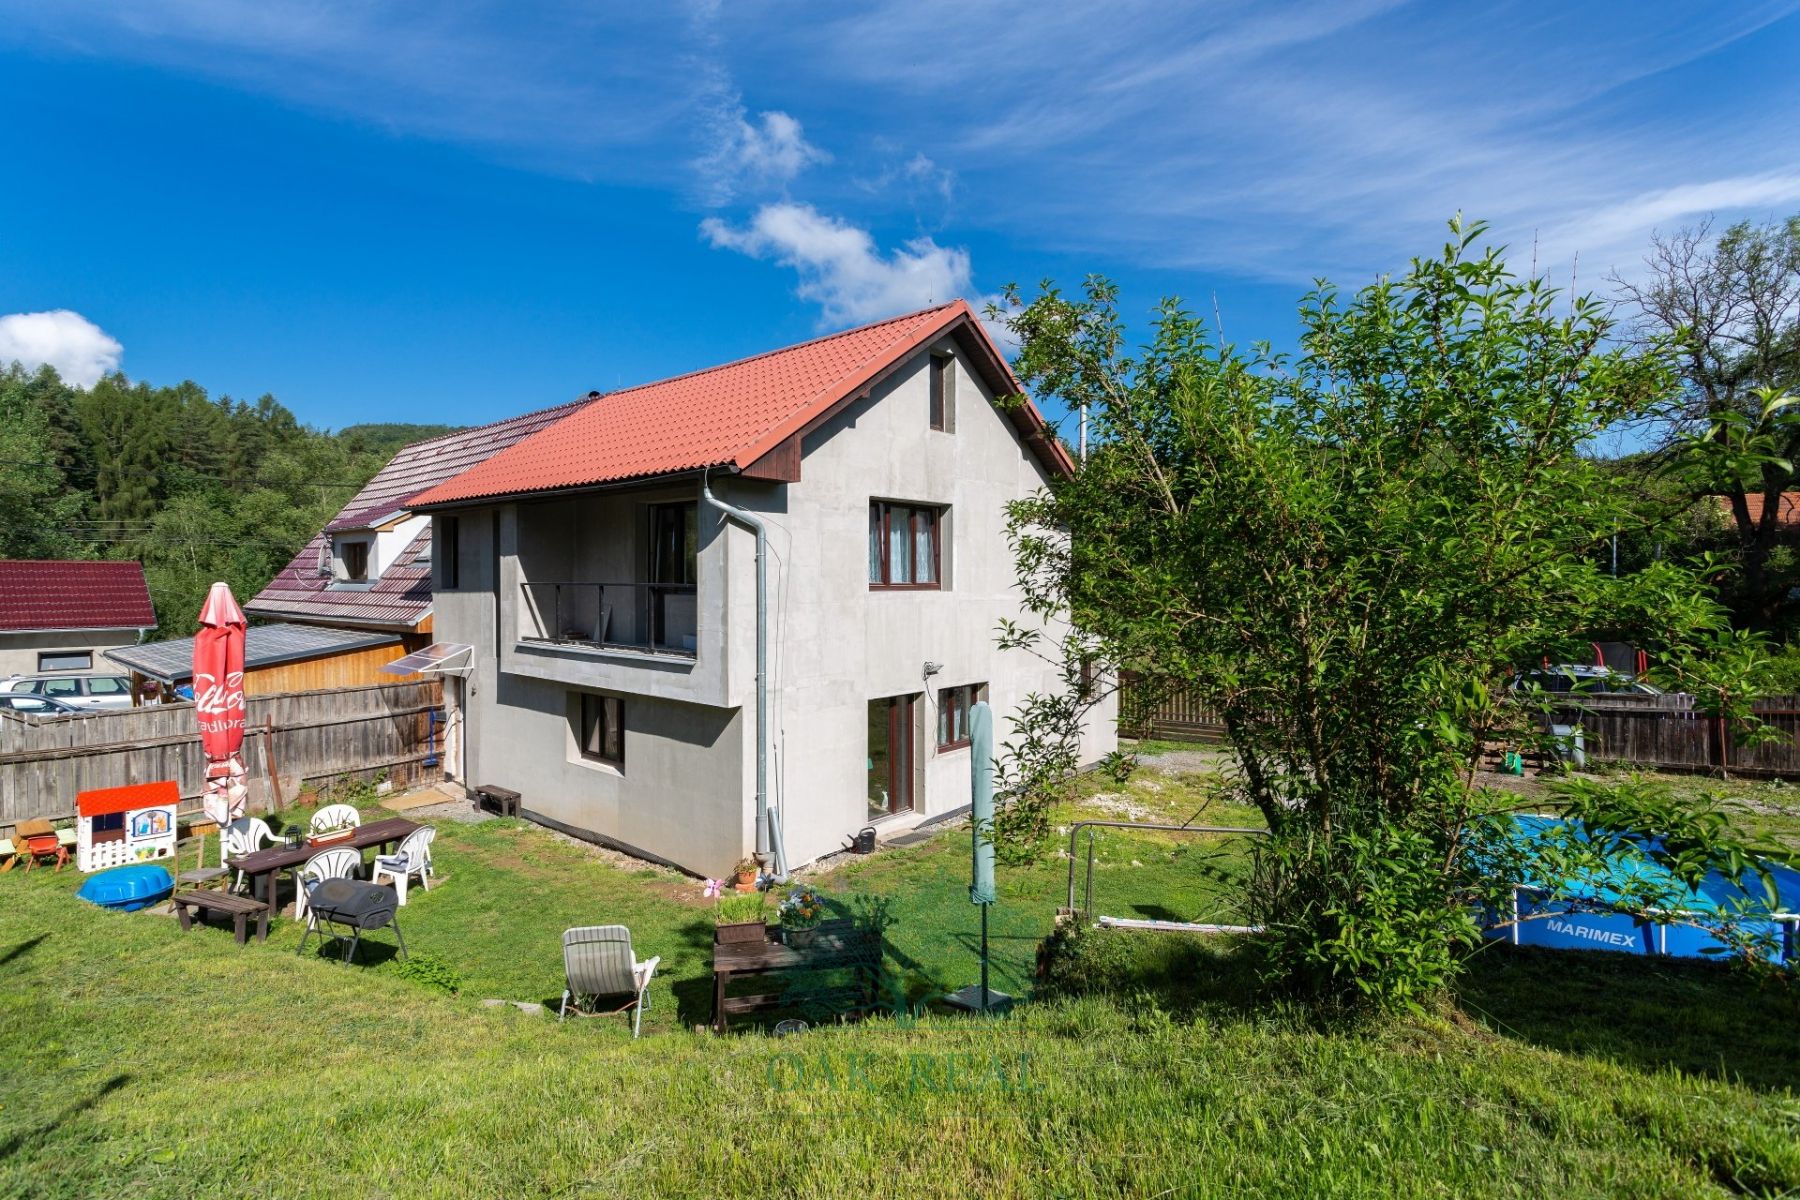 Prodej rodinného domu o velikosti 148 m2, na pozemku 802 m2, Řehenice u Babic, okres Benešov.